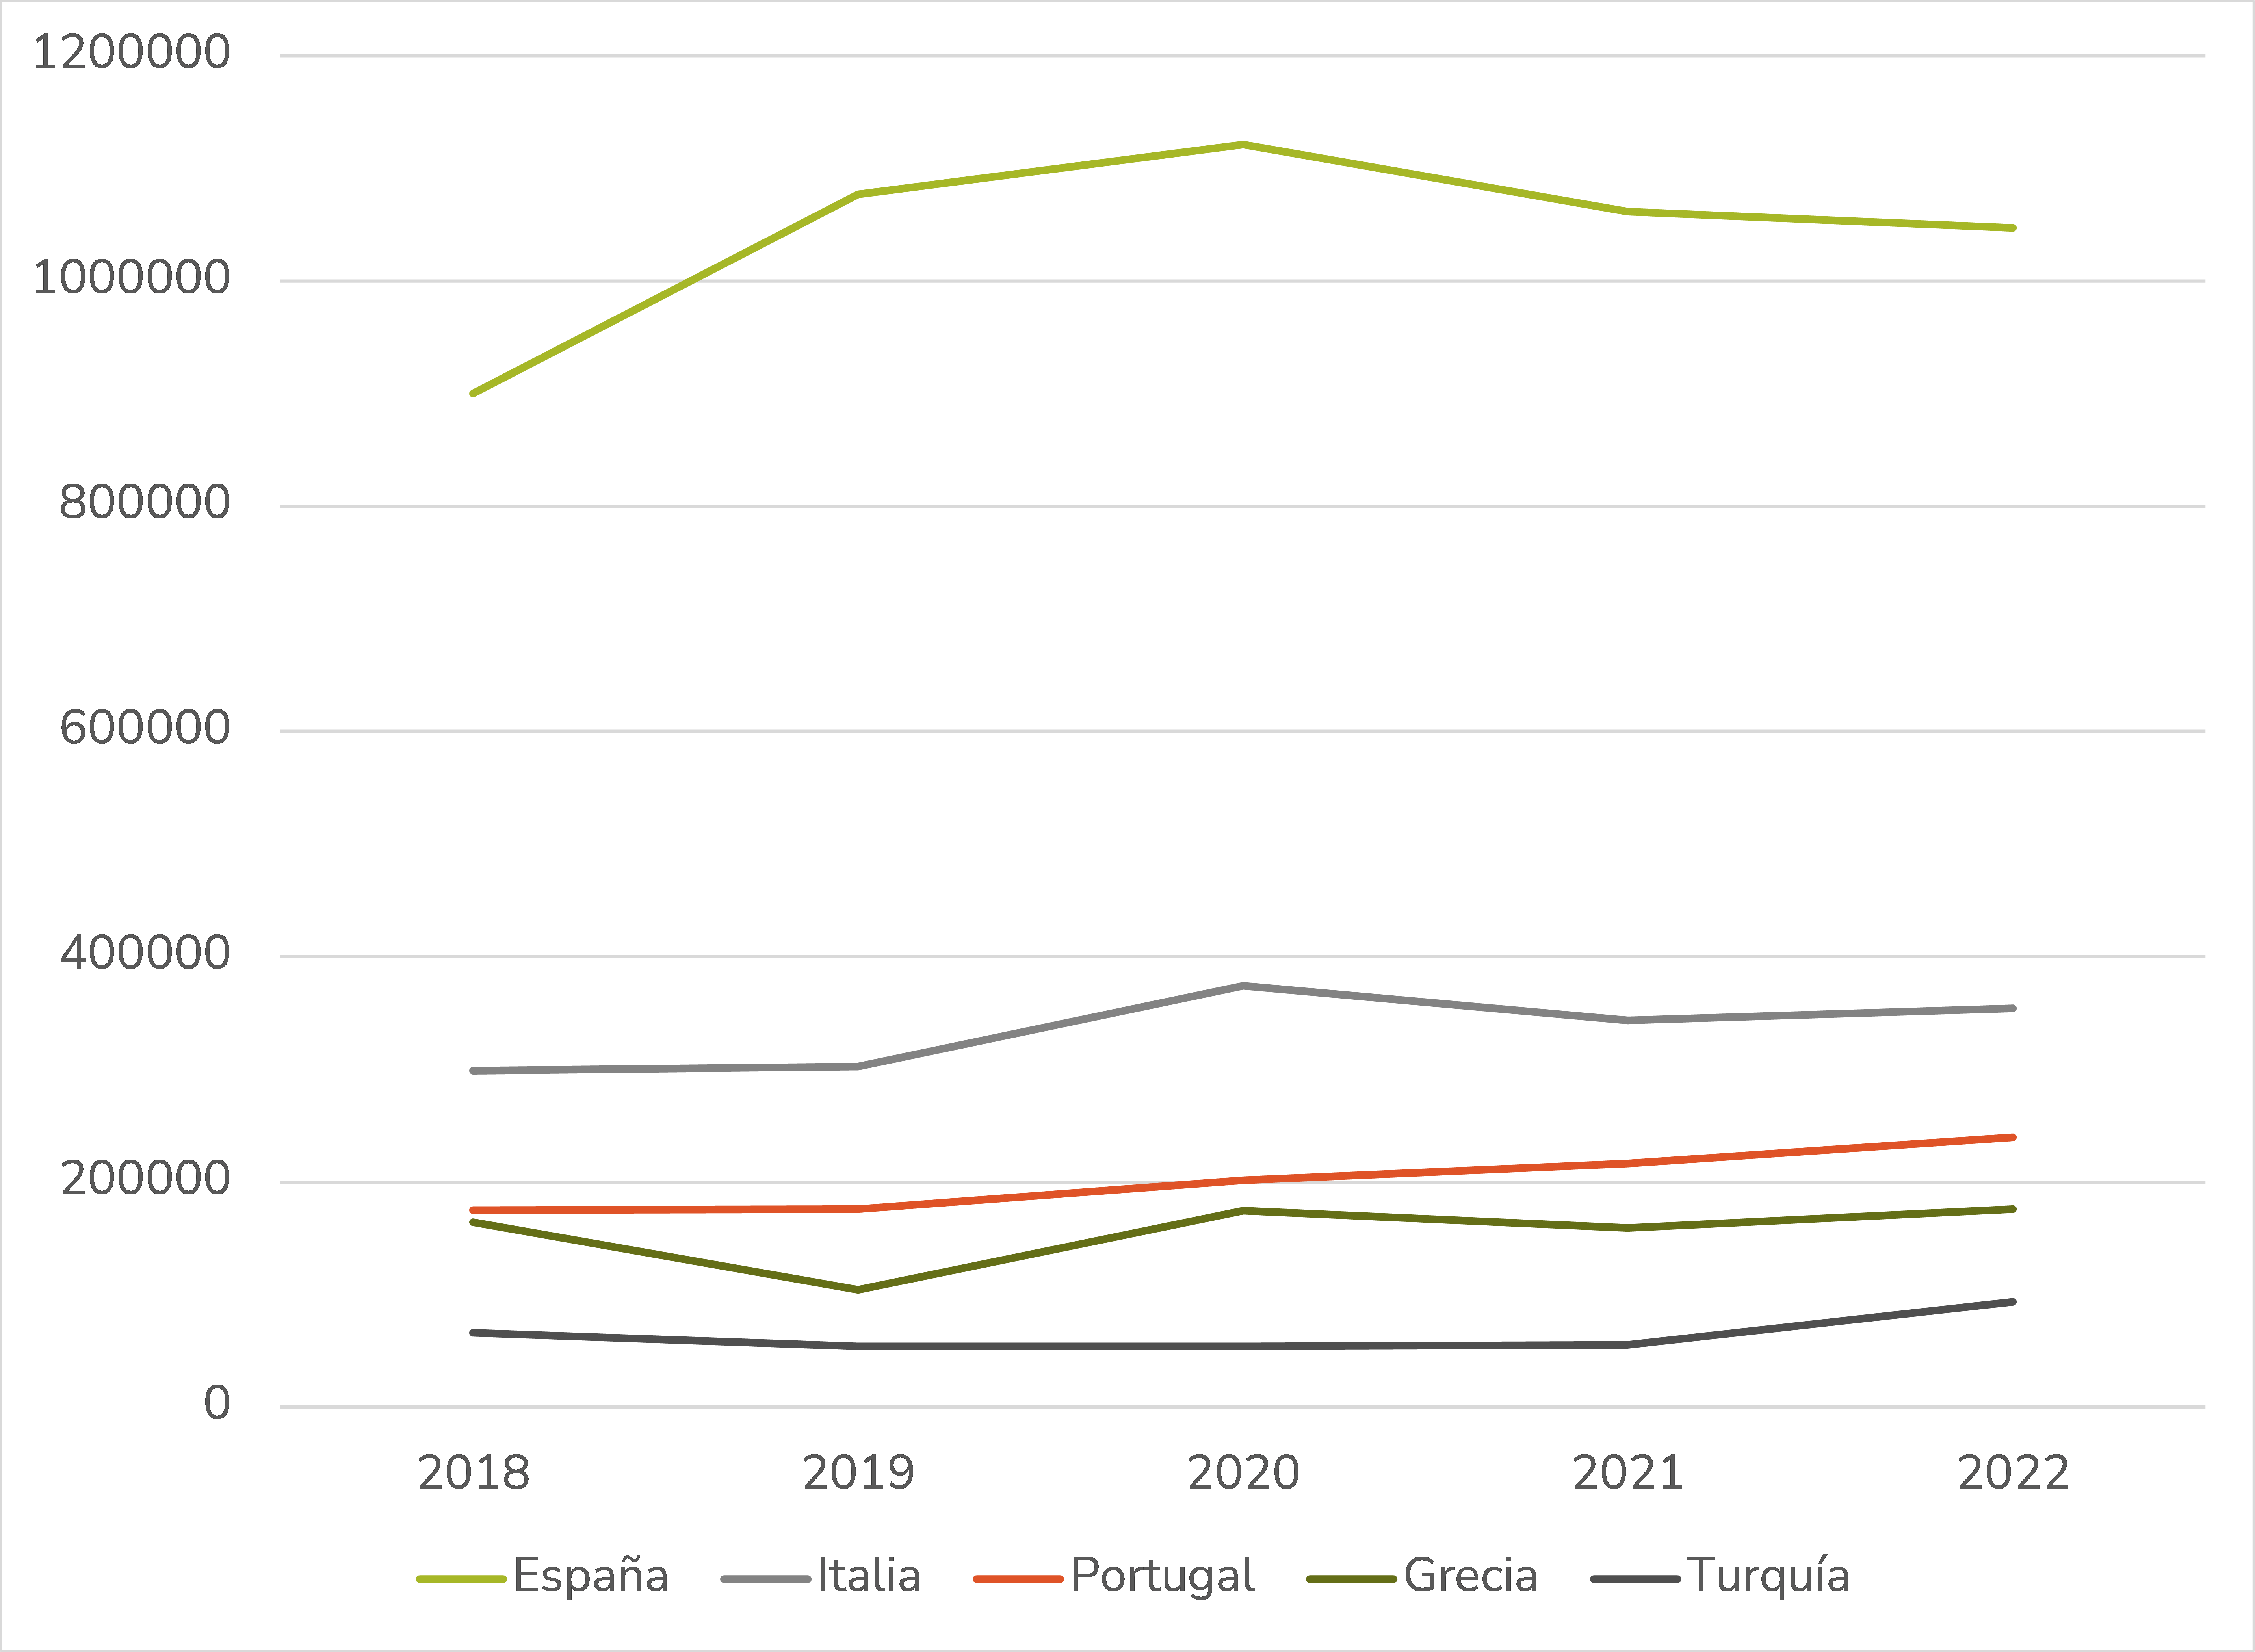 Gráfico que muestra la evolución de la exportación de aceite de oliva por país entre el año 2018 y 2022